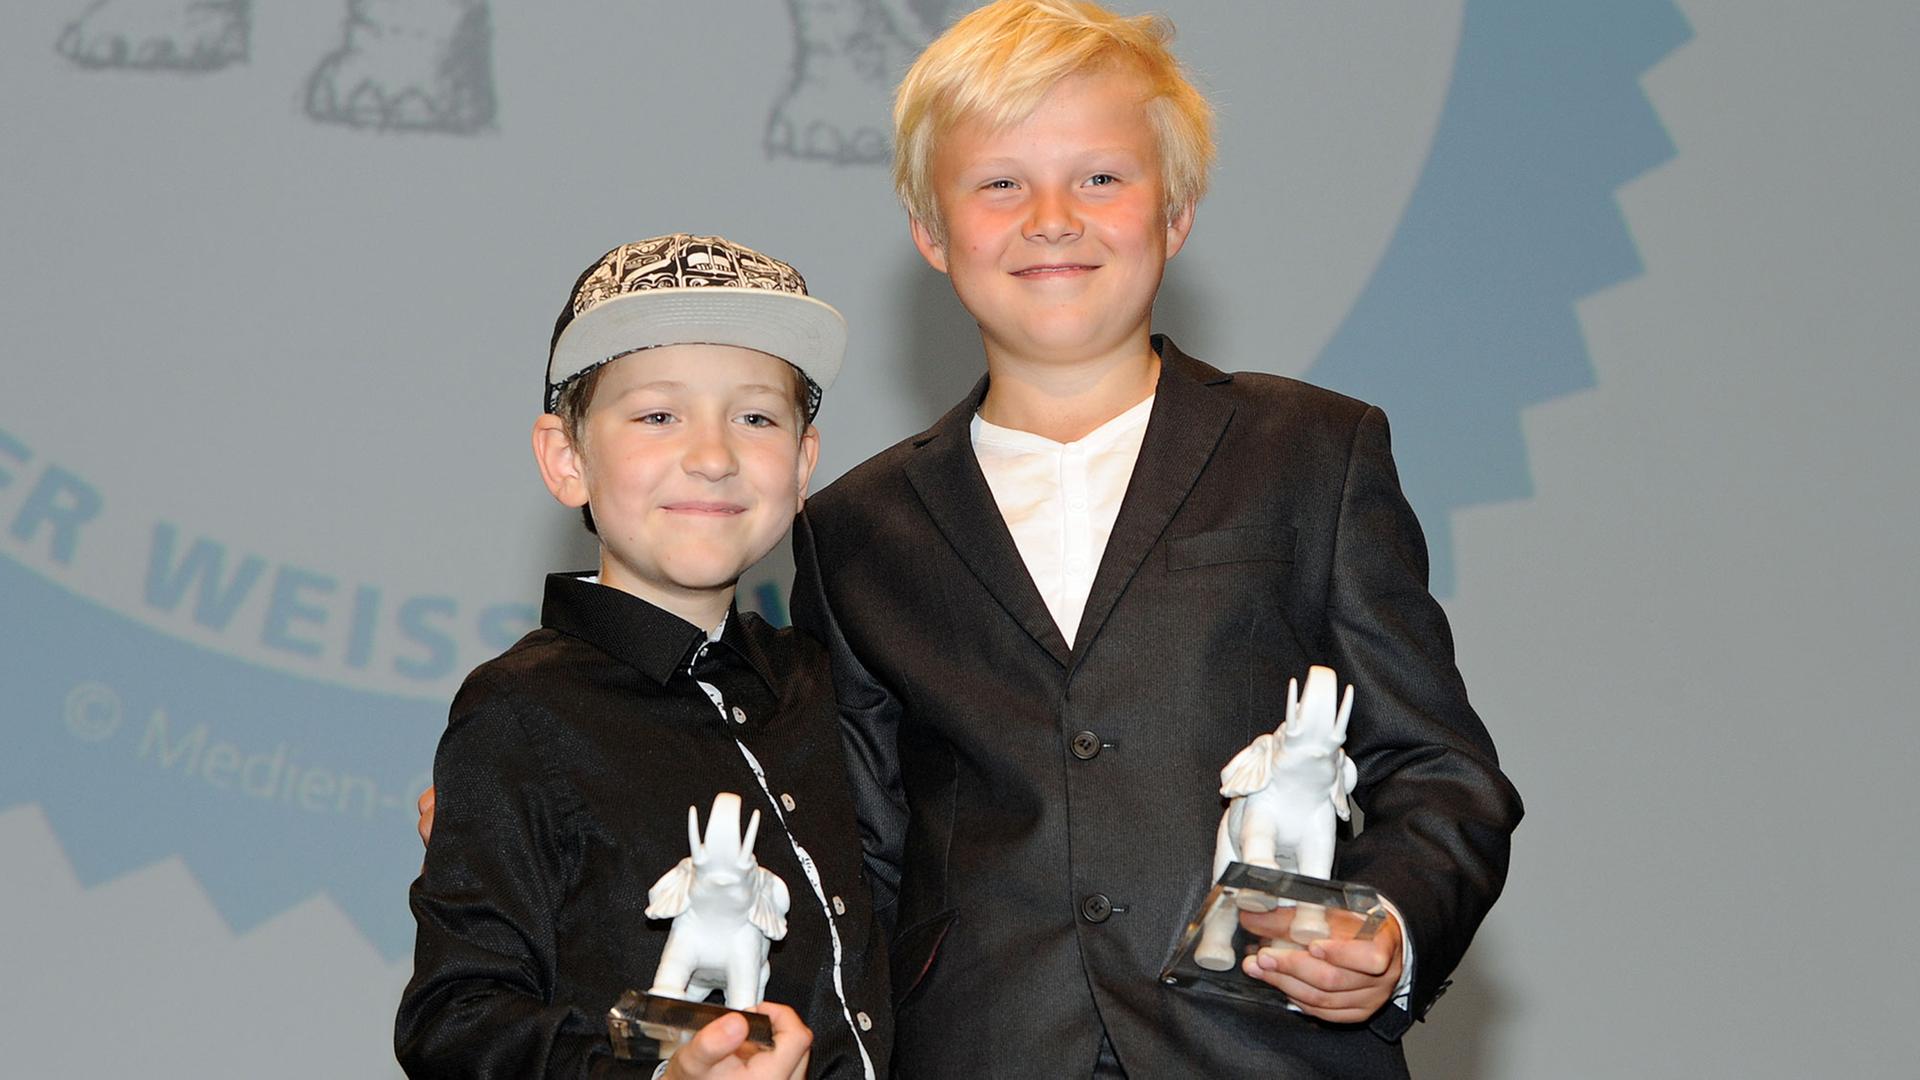 Für "Rico, Oskar und die Tieferschatten" sind Juri Winkler (l.) und Anton Petzold mit dem Kinder-Medienpreis "Der weiße Elefant" ausgezeichnet worden. Hier sind sie auf der Preisverleihung in München zu sehen.